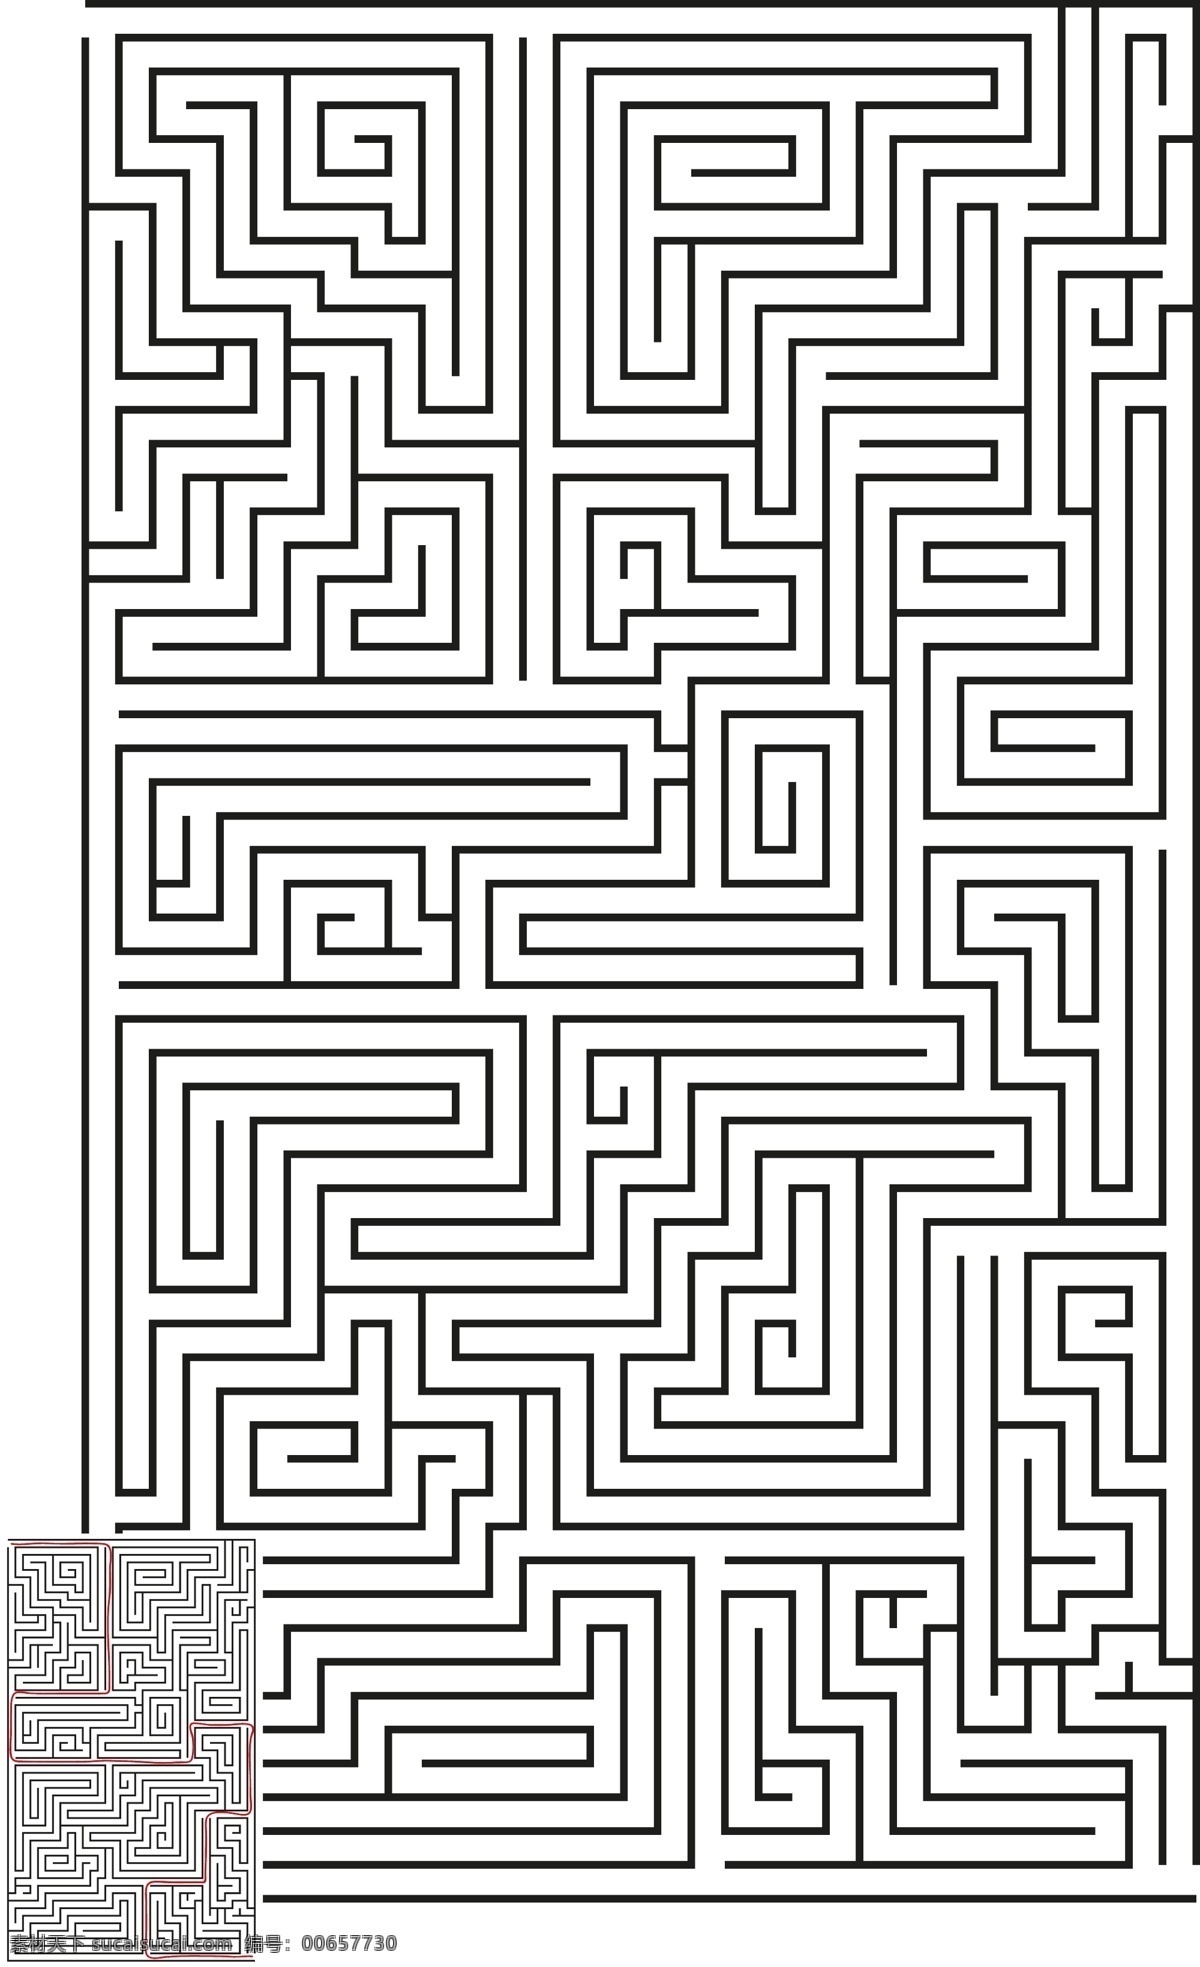 黑色 线条 迷宫 图案 线路图 线路 插图 拼图 答案 游戏 平面图 迷宫解法 底纹边框 背景底纹